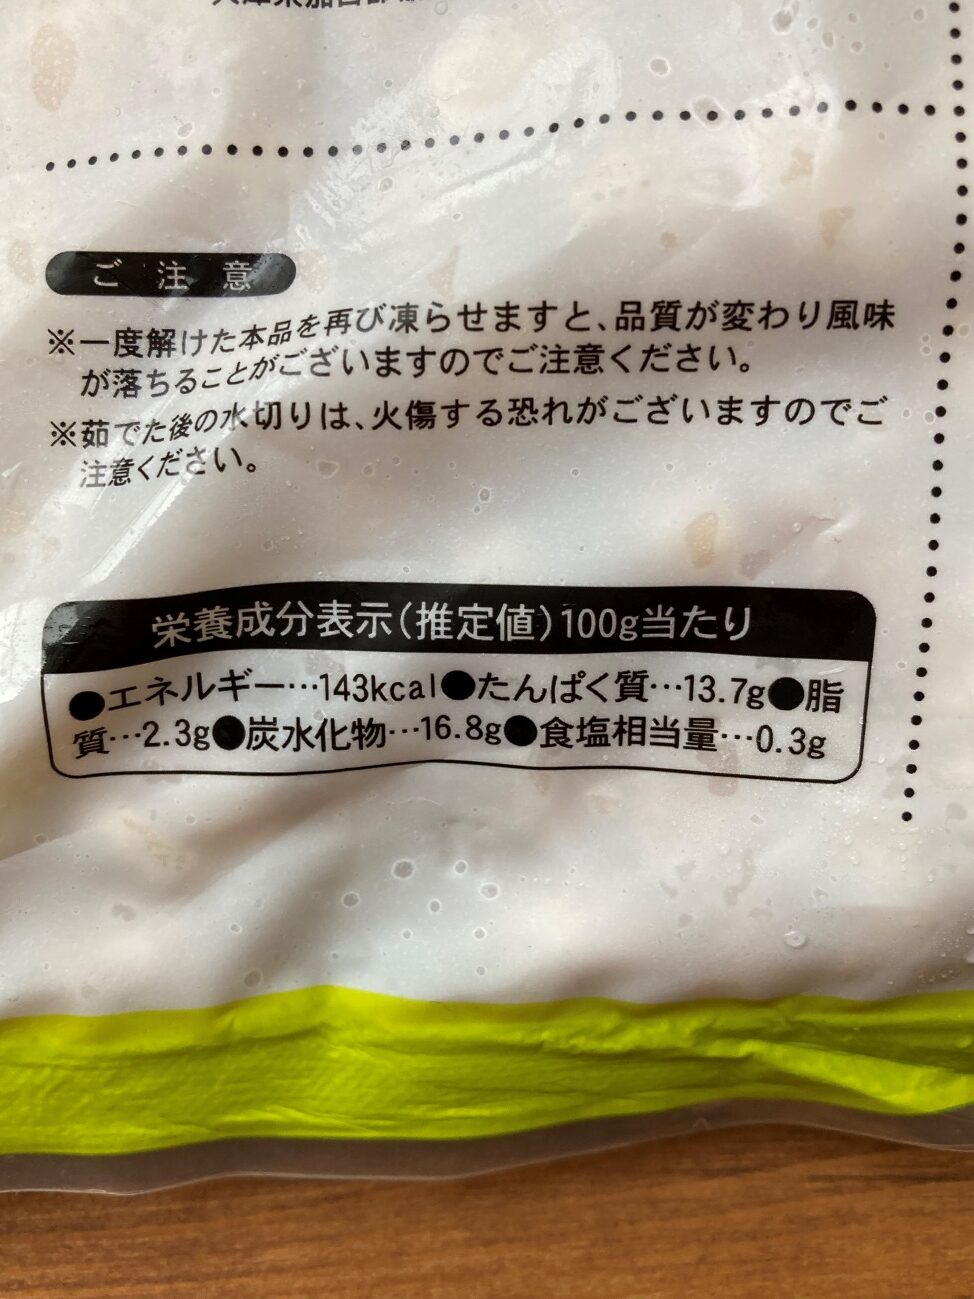 業務スーパーの冷凍ゆで大豆の栄養成分表示